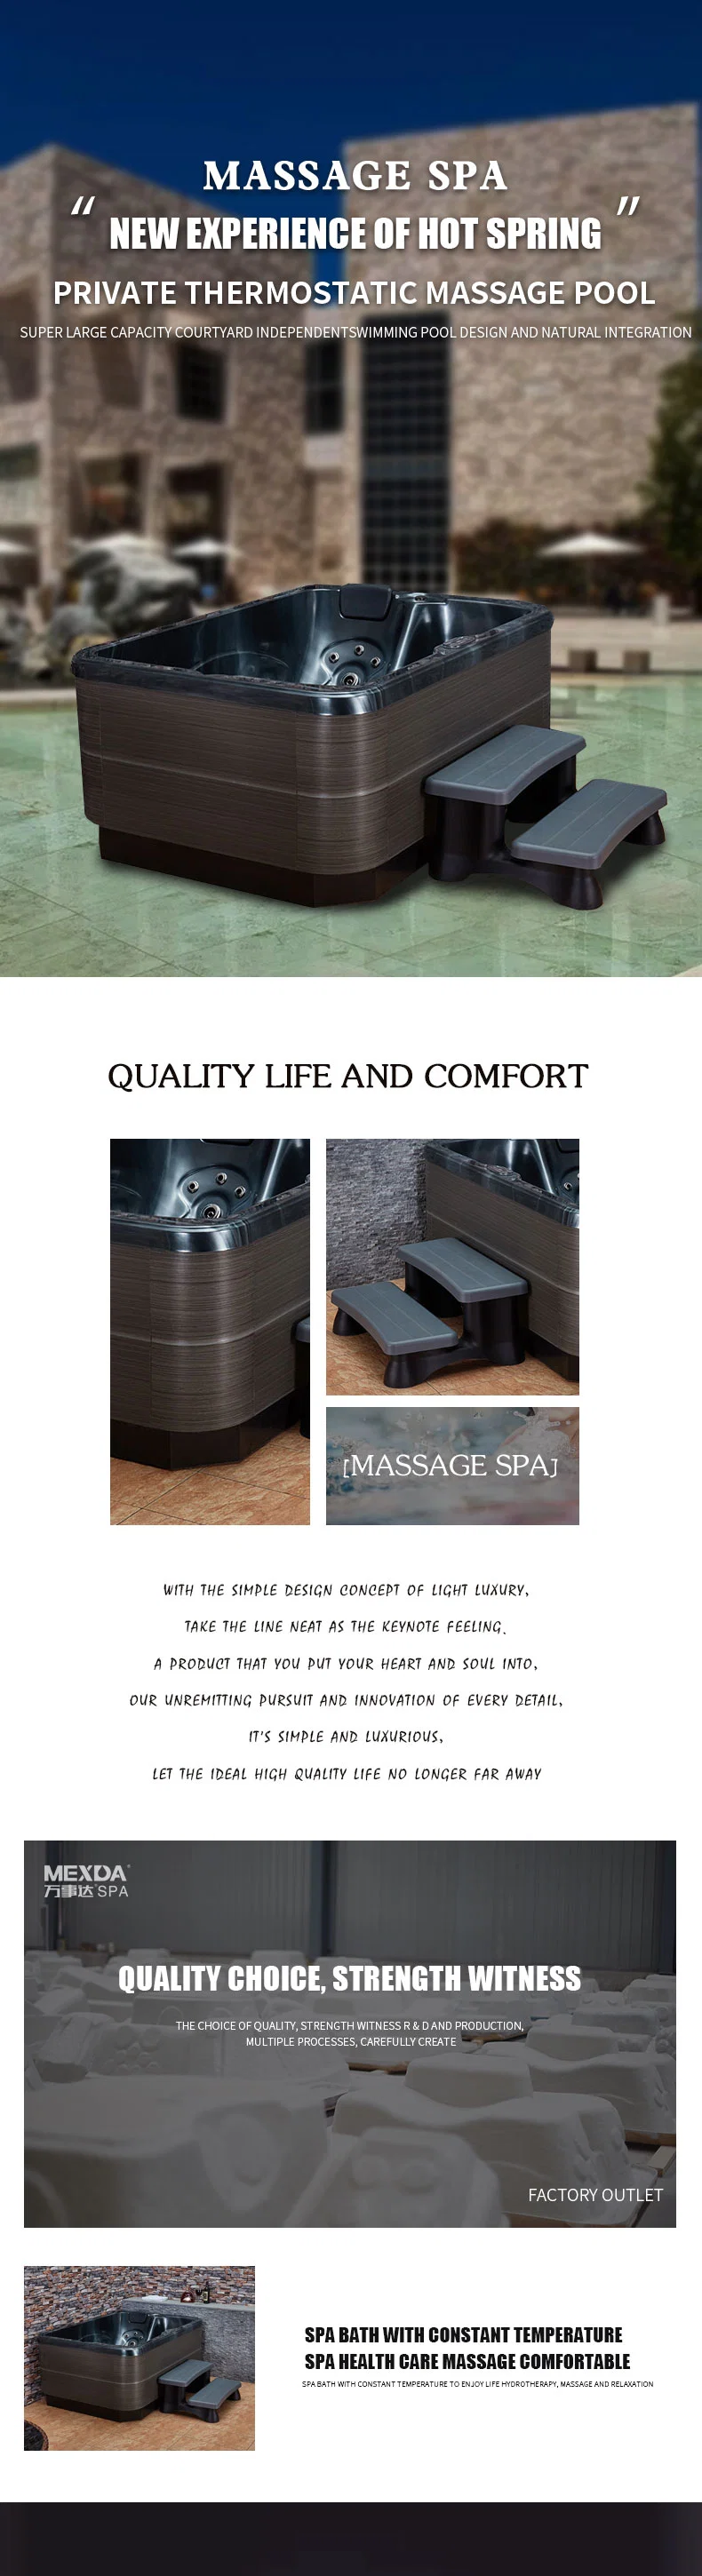 Outdoor Bathtub, 2021 New Design Massage Pool Intelligent Small Pool Indoor Couple SPA Pool Whirlpool